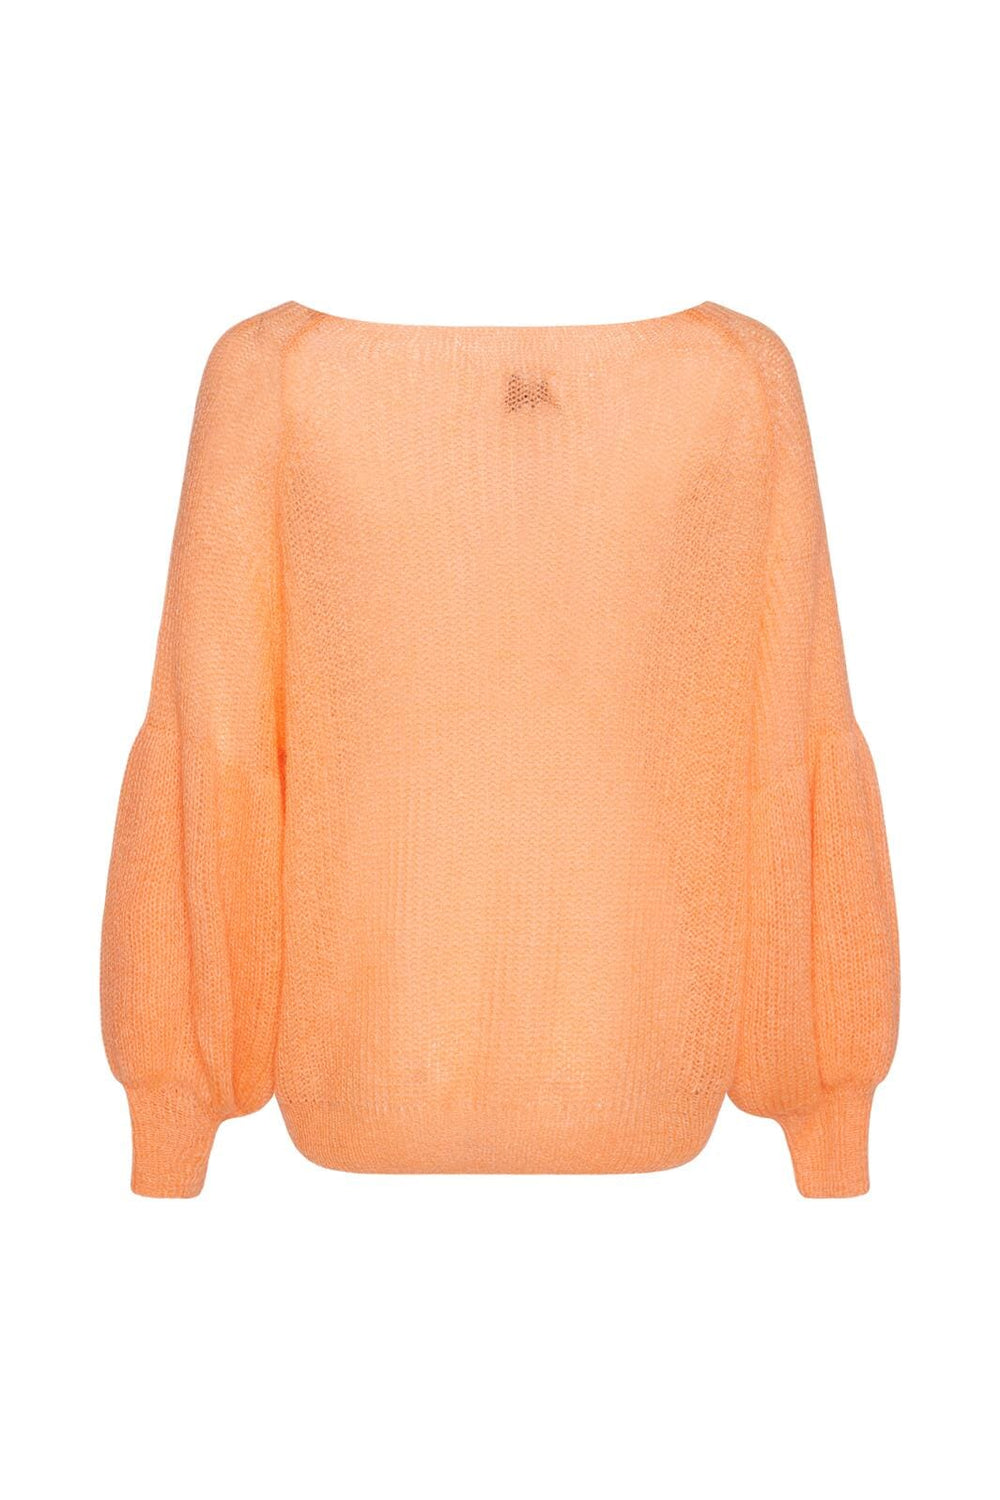 Noella - Miko Knit Sweater - 918 Melon